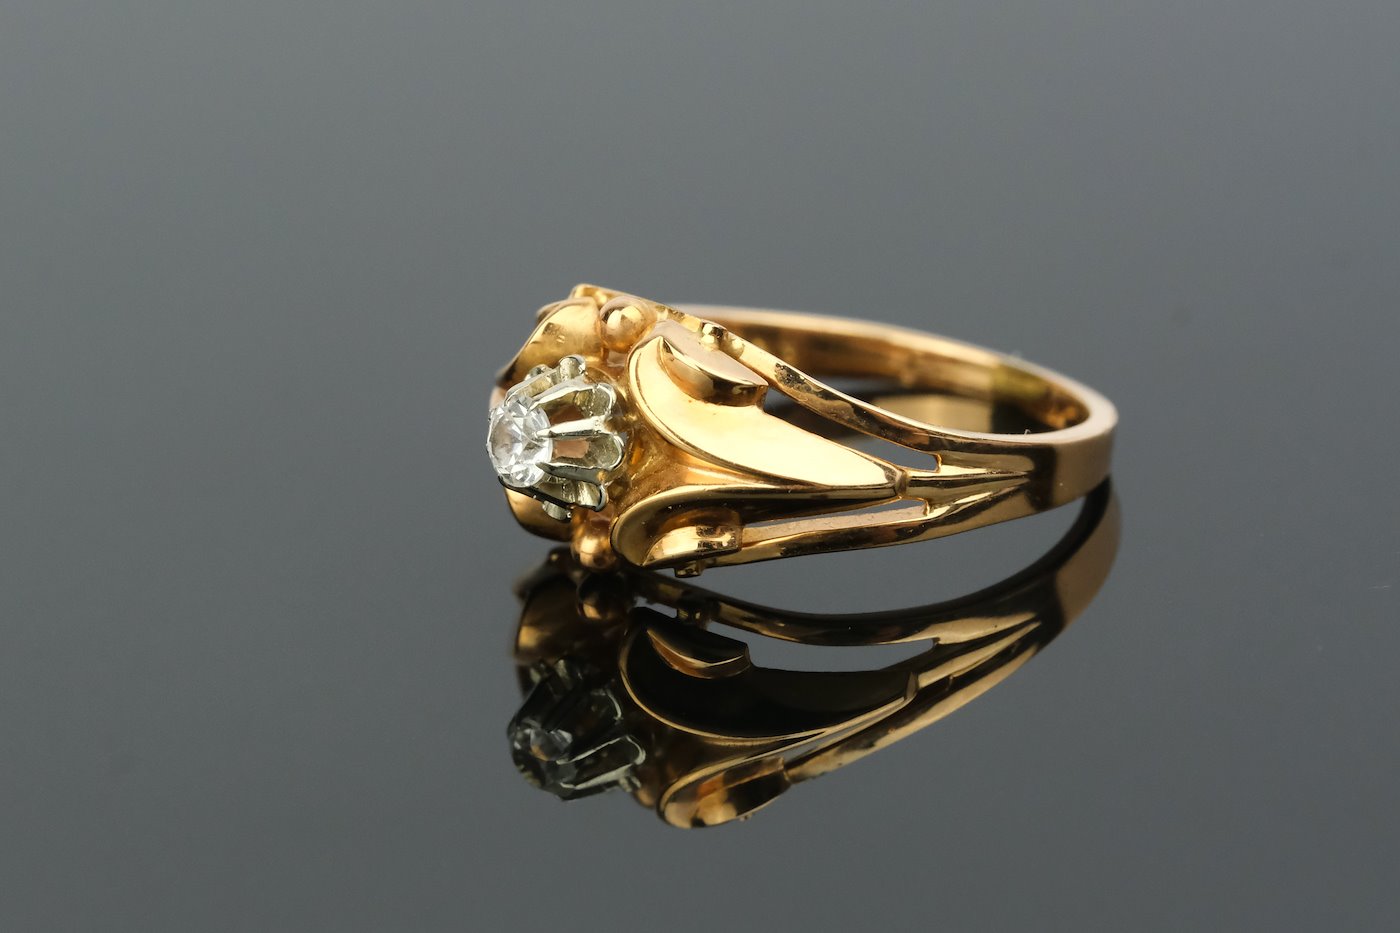 .. - Prsten s diamantem 0,05 ct, zlato 750/1000, značeno platnou puncovní značkou "kohout", hrubá hmotnost 3,50 g